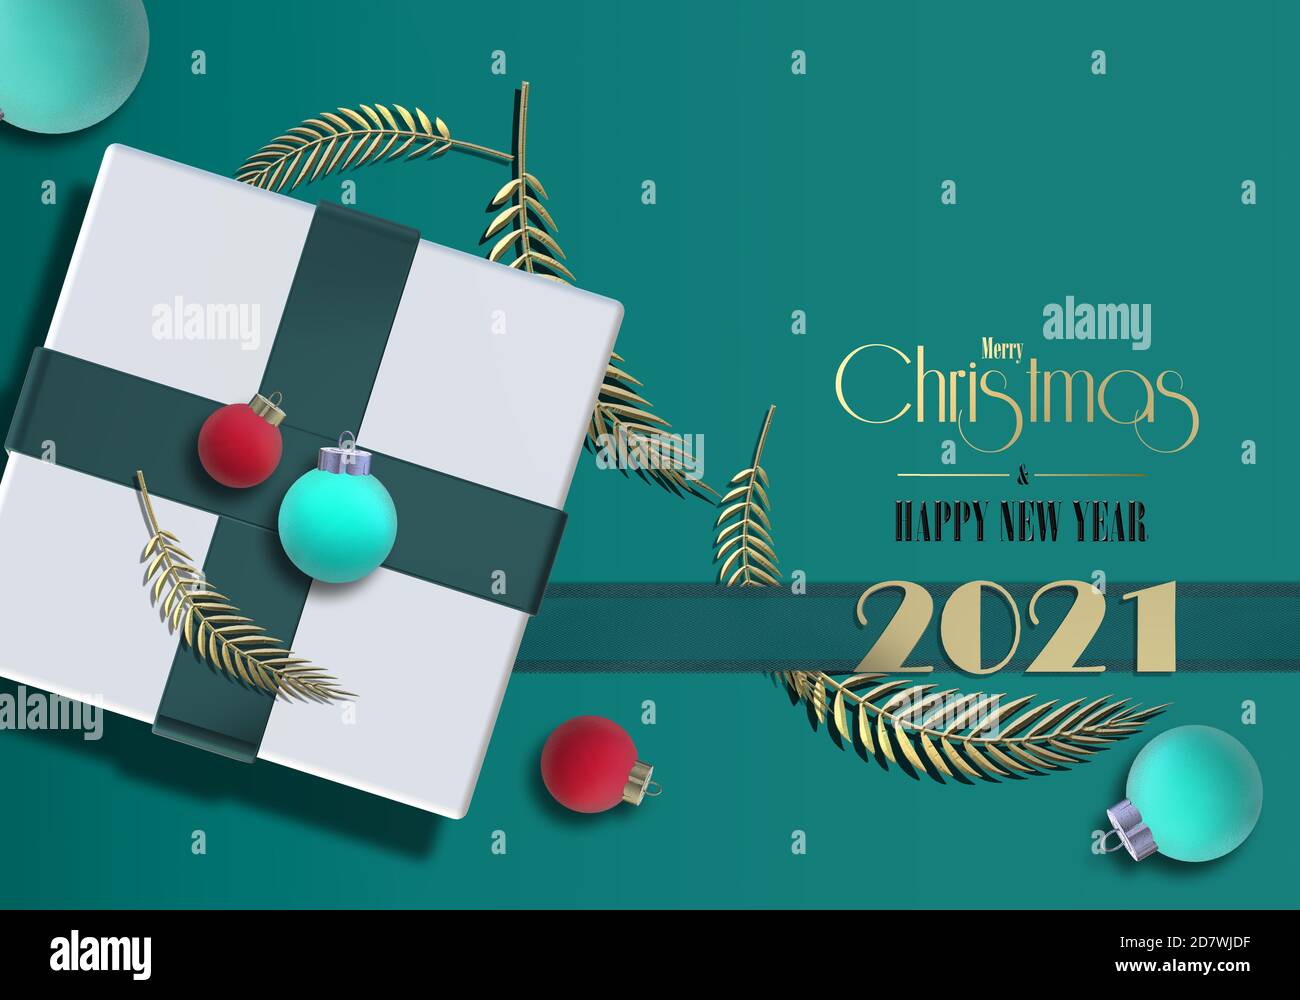 Carte de Noël du nouvel an 2021. Boîte cadeau de Noël avec noeud, boules de Noël boules de boules, feuilles d'or, texte doré Joyeux Noël bonne année 2021 sur fond vert. Illustration 3D Banque D'Images